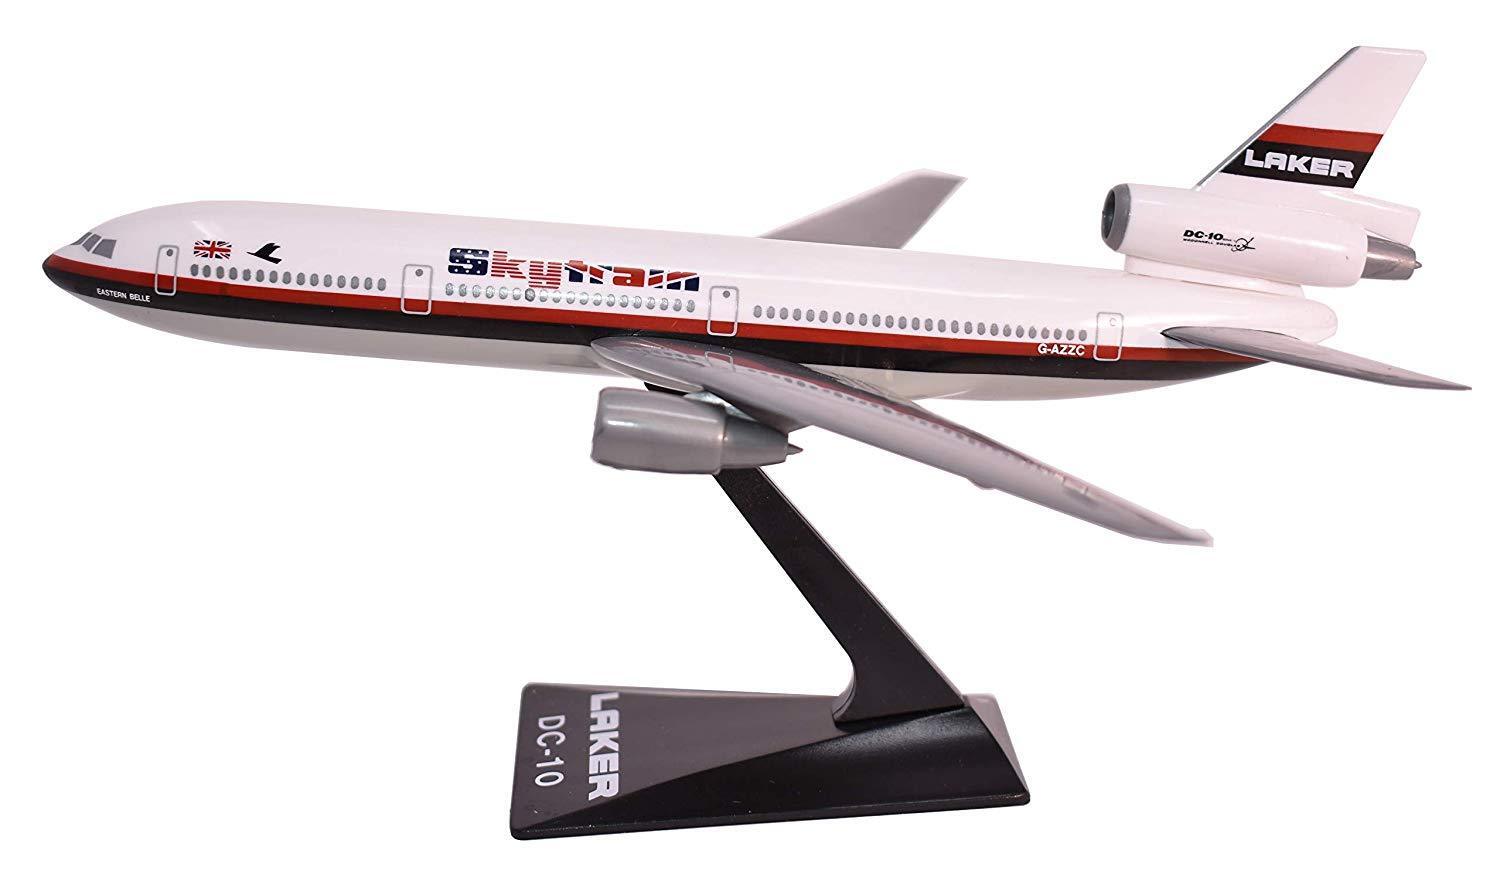 Flight Miniatures Laker Airways Skytrain DC-10 Desk Display Model 1/250 Airplane